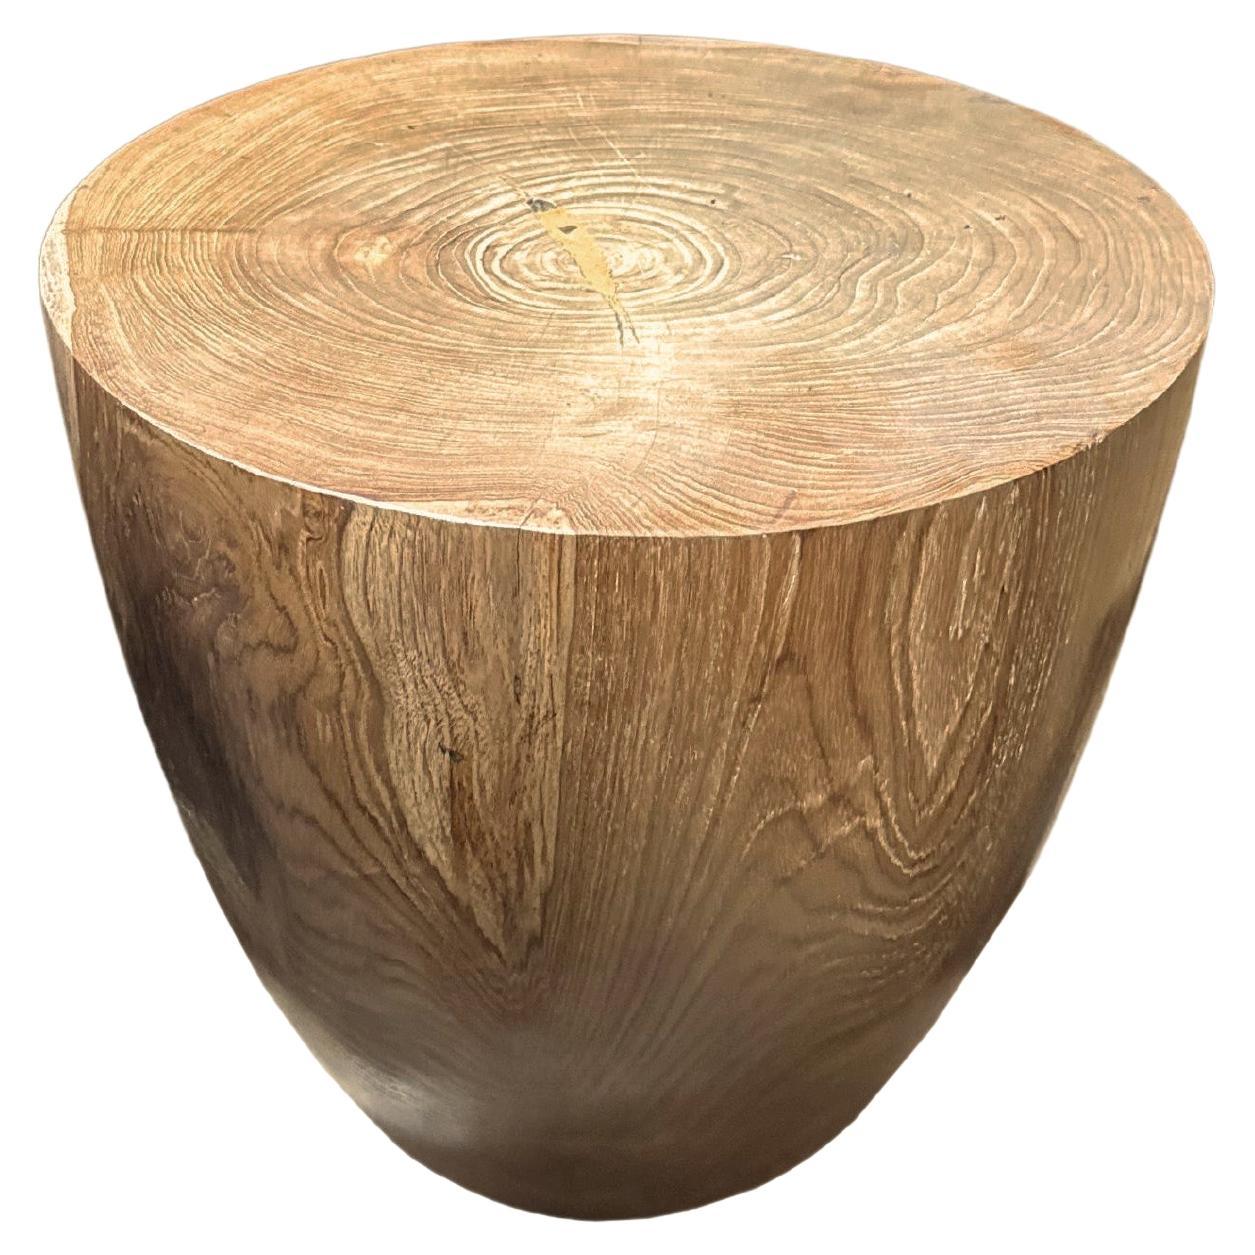 Table d'appoint sculpturale en bois de teck, avec de superbes textures de bois, organique moderne